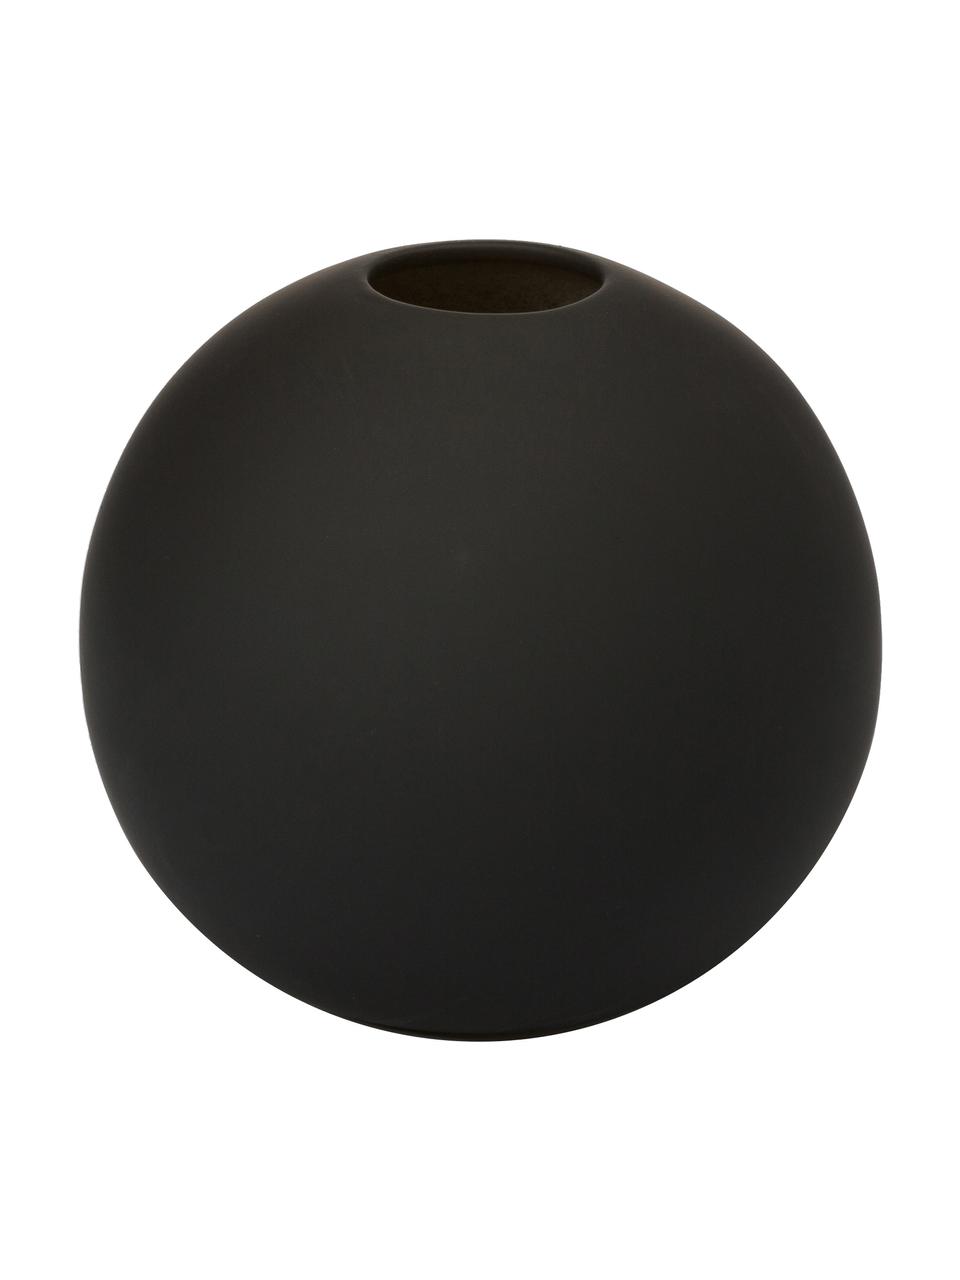 Handgefertigte Kugel-Vase Ball in Schwarz, Keramik, Schwarz, Ø 10 x H 10 cm